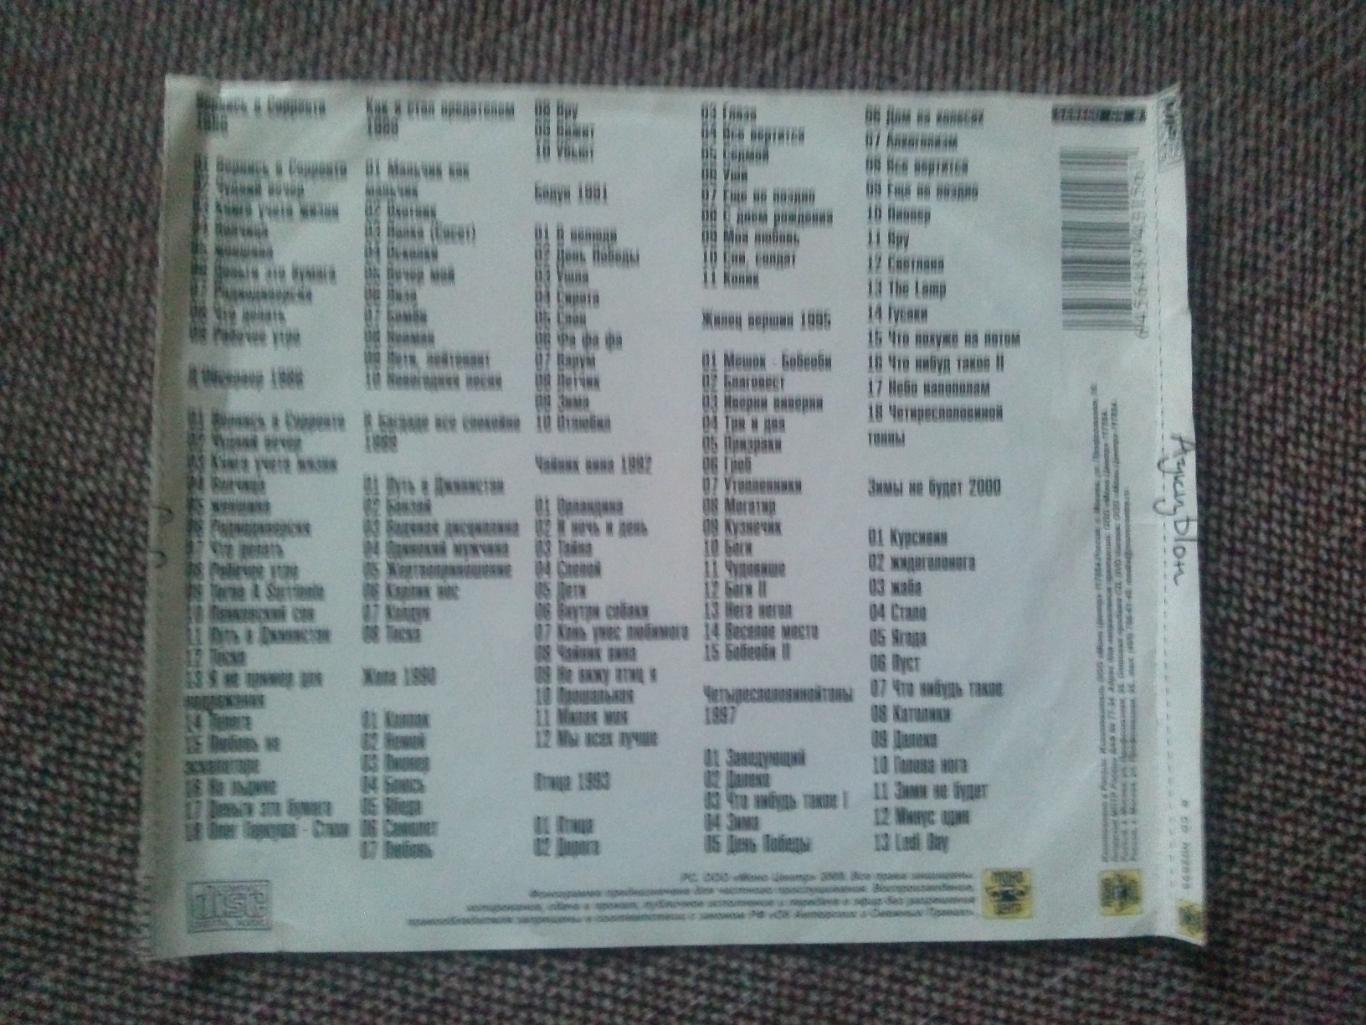 MP - 3 CD диск : группаАукцыон1986 - 2000 гг. 11 альбомов (Русский рок) 4